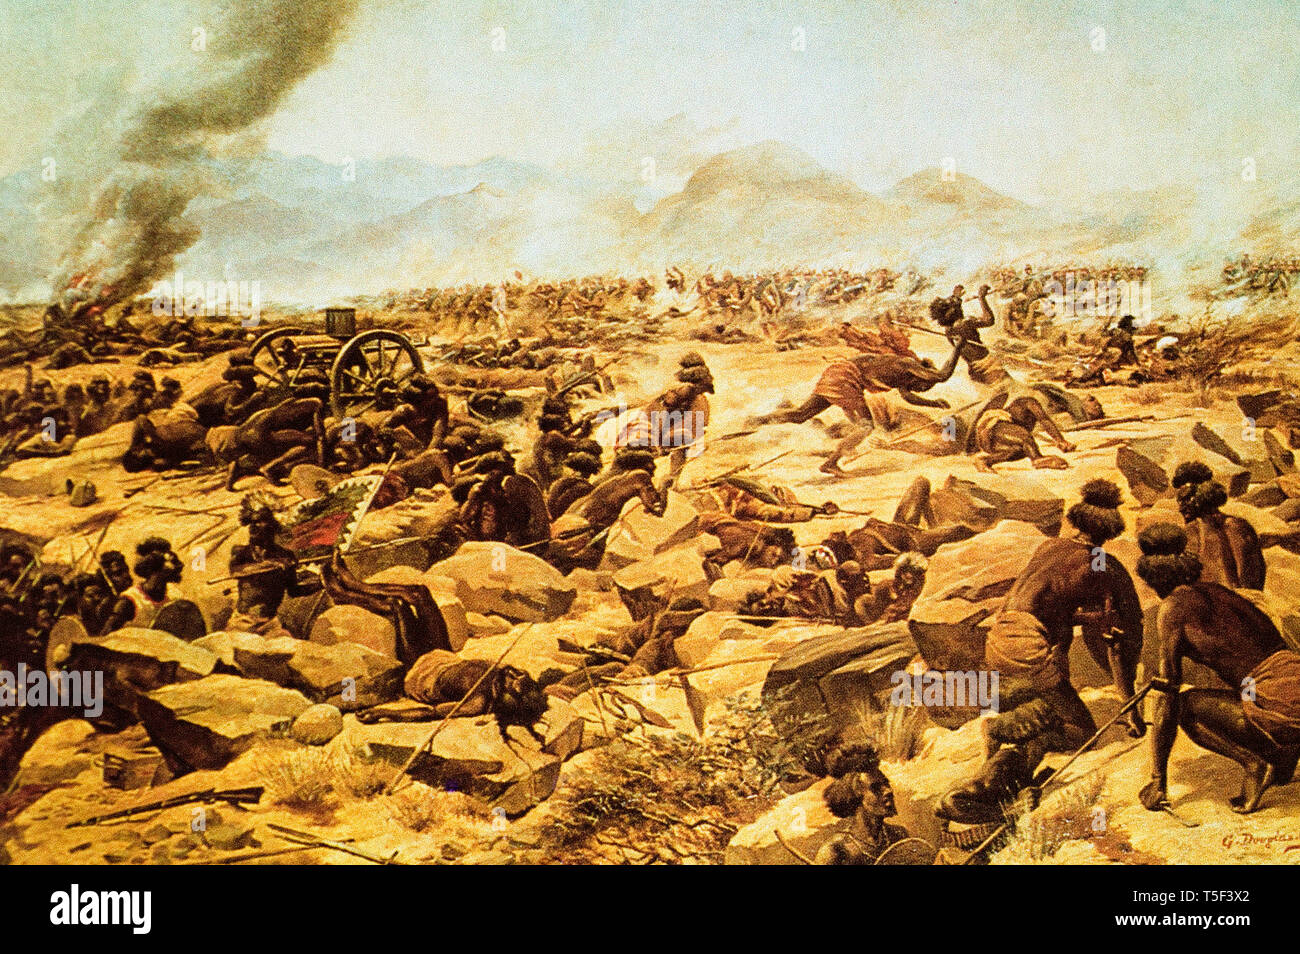 Guerre de Mahdia ( 1881â€"1899) - La bataille de Tamai. Hadendowa showns guerriers essayant d'exploité une machine capturés Banque D'Images